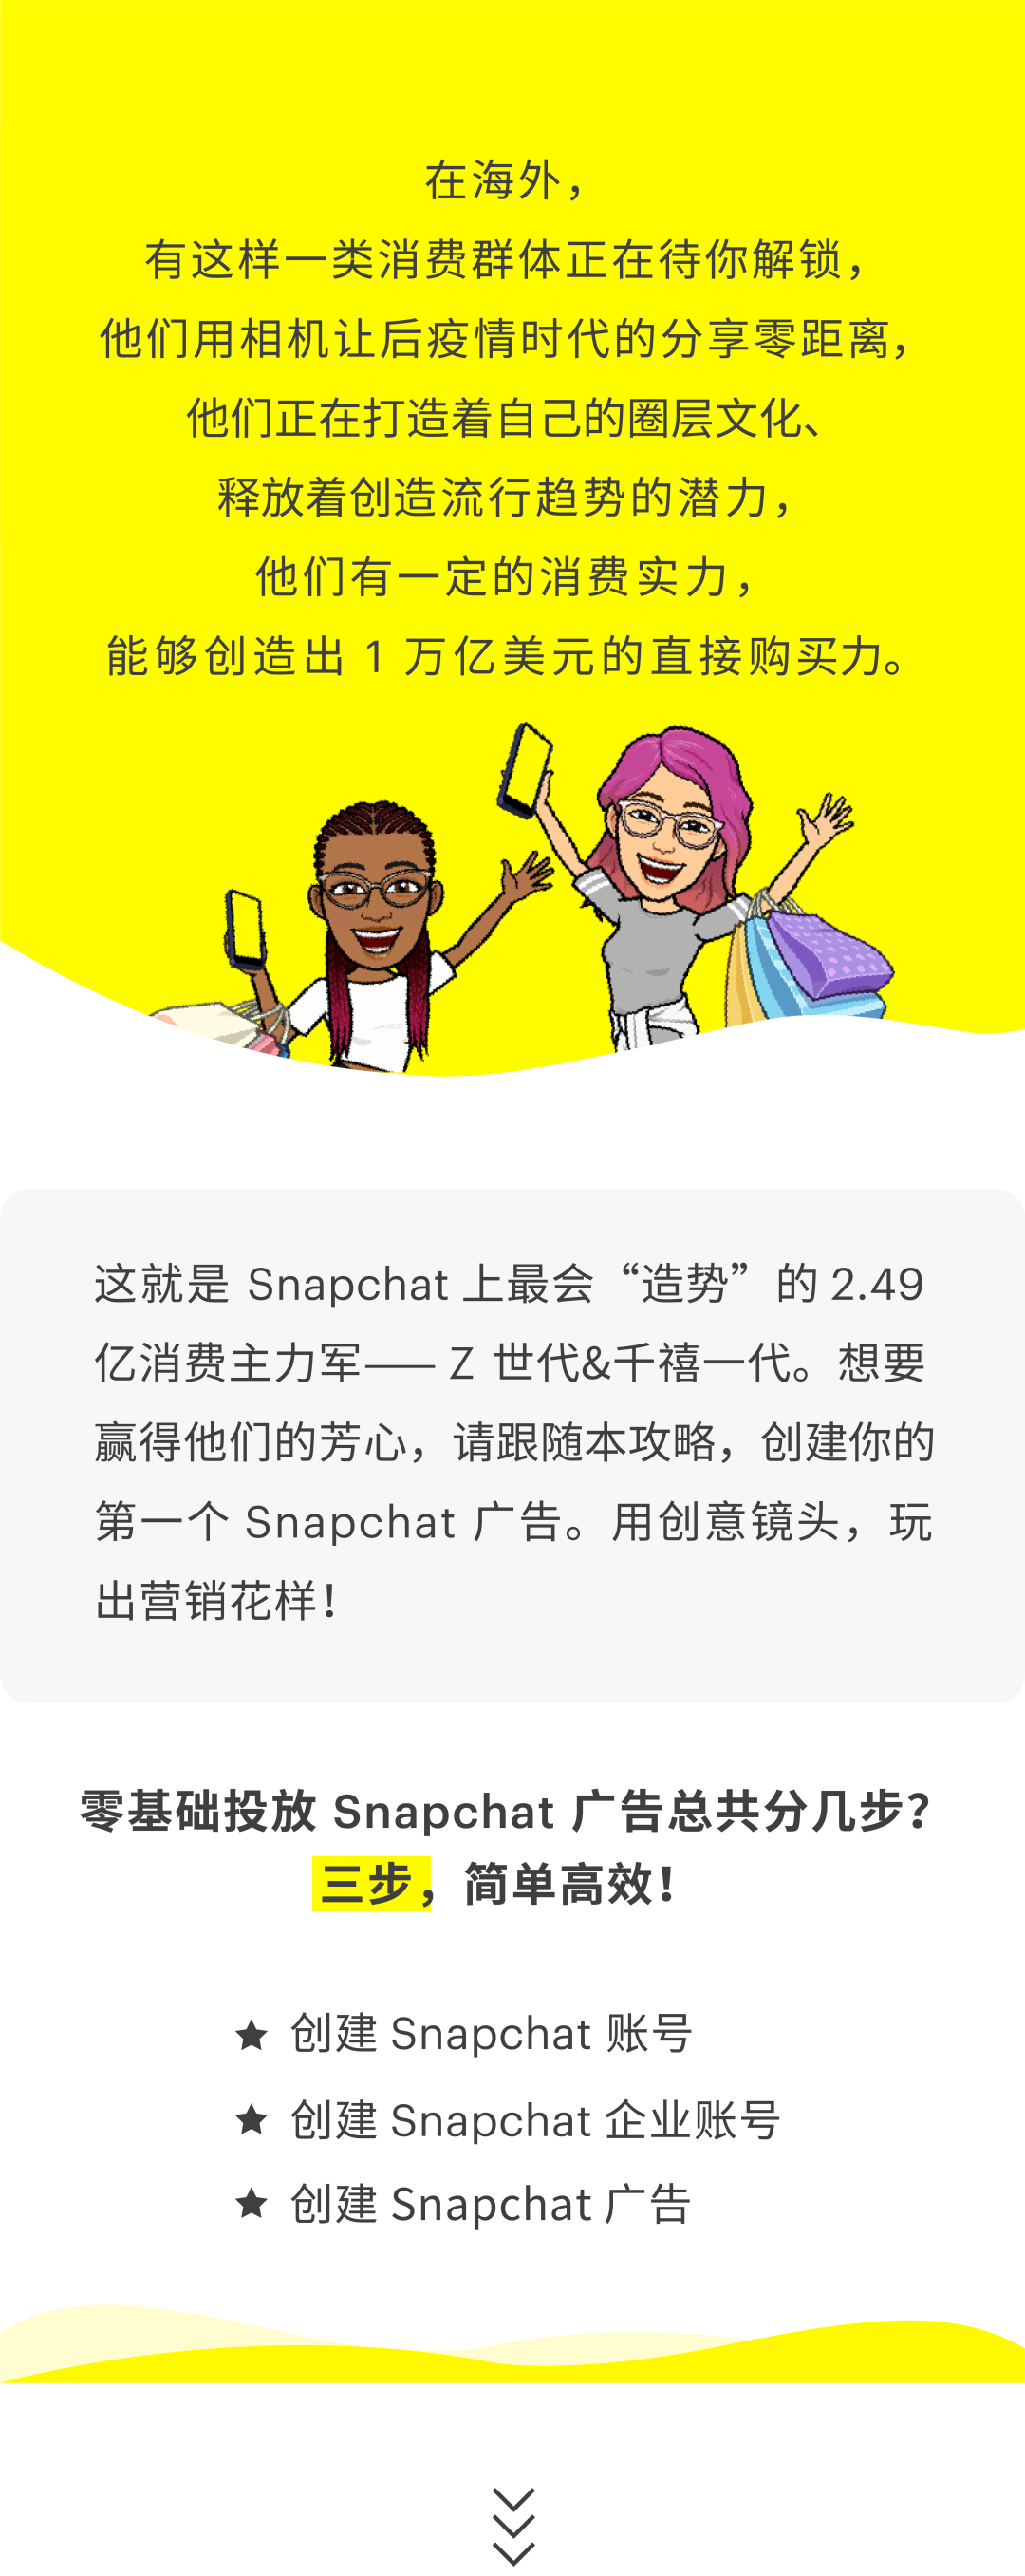 干货分享 | 手把手教你创建 Snapchat 广告